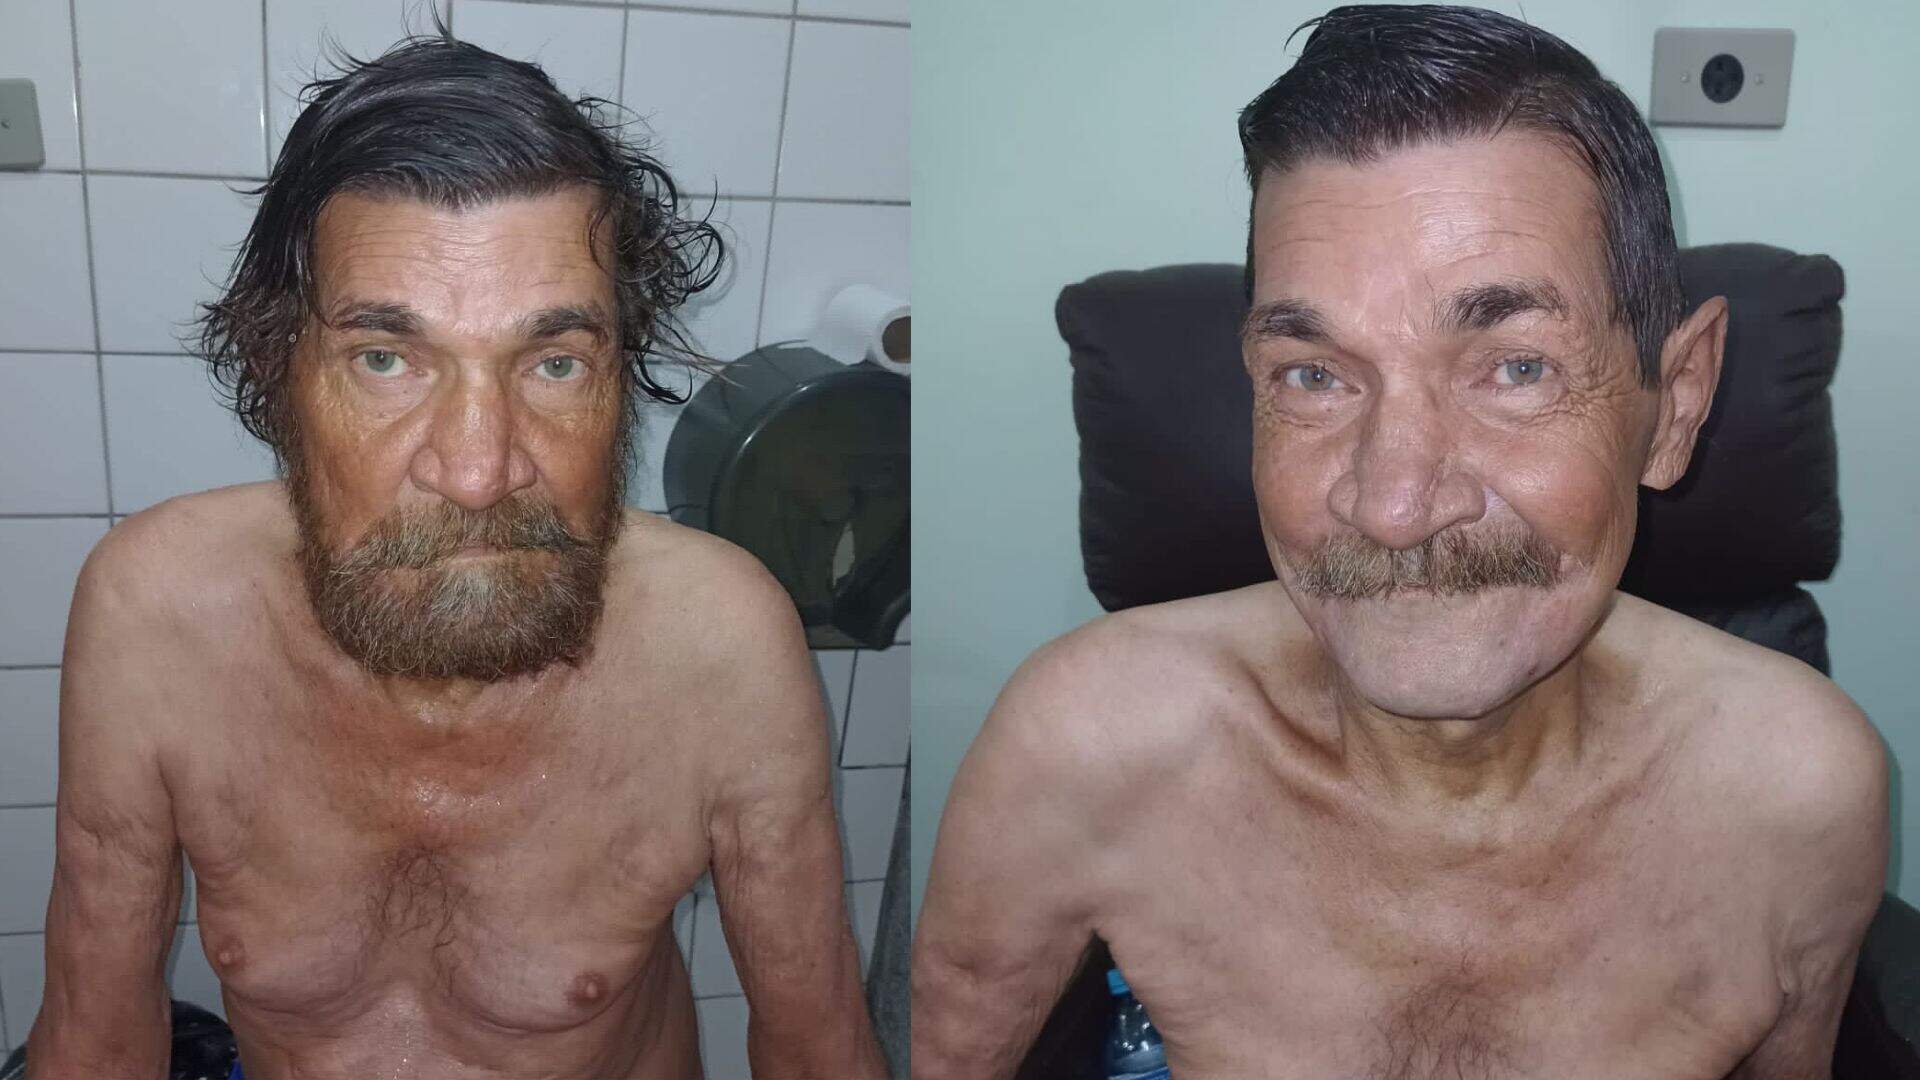 Morador de rua vai para hospital após pneumonia e tem visual transformado: ‘Agora está sorrindo’